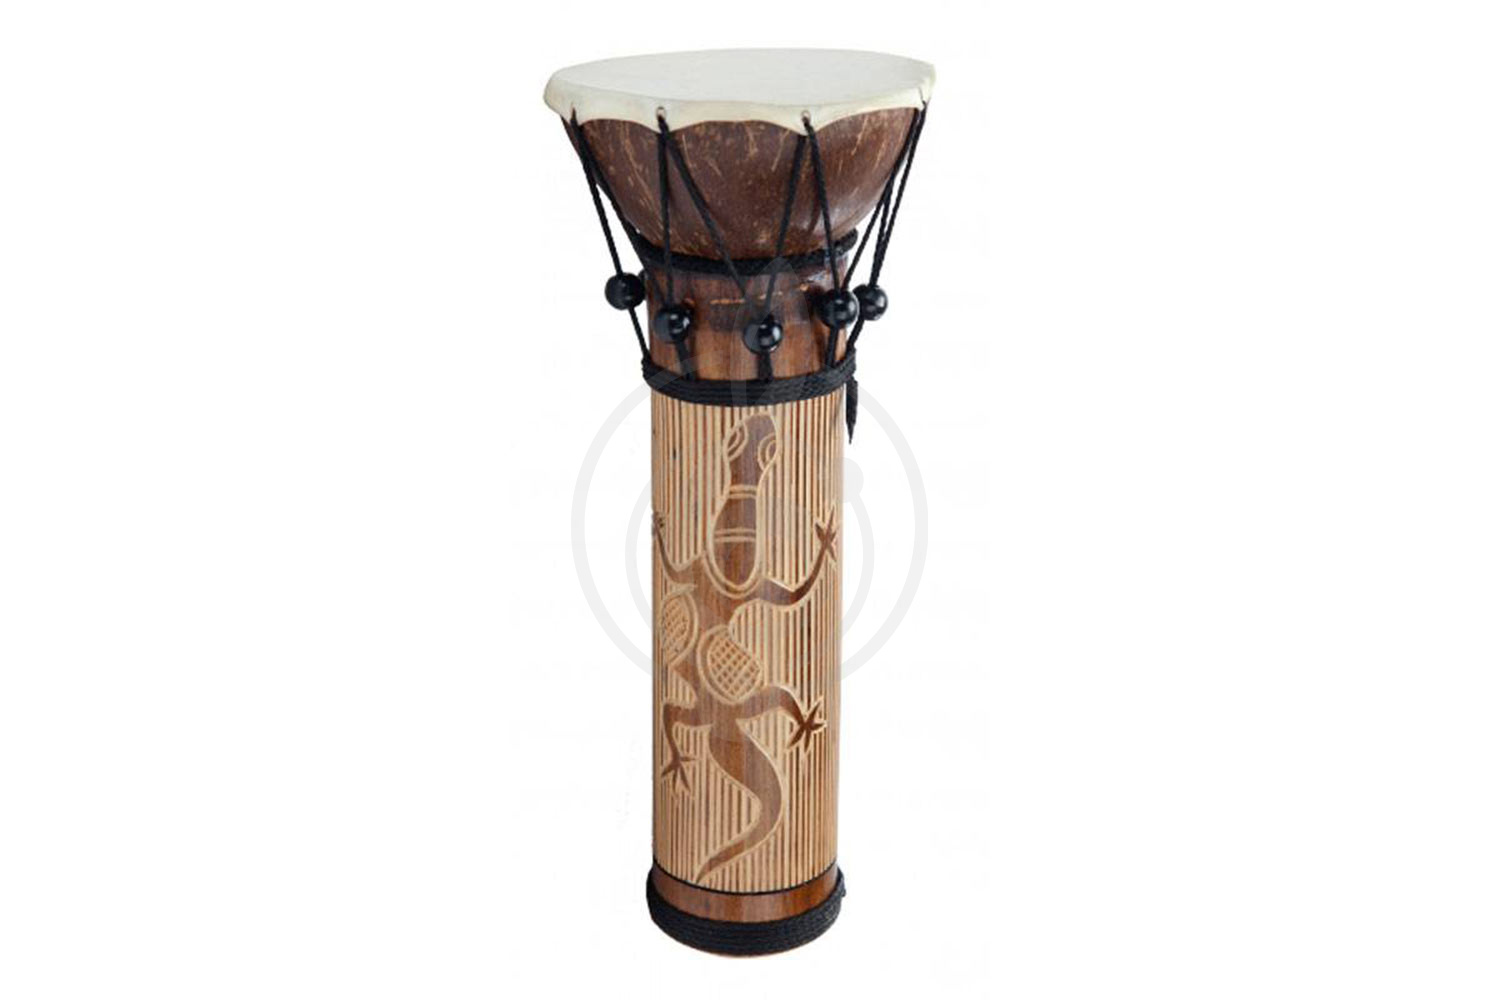 Этническая перкуссия Этническая перкуссия VESTON VESTON FBDS-14 - бамбуковый барабан, размер: 14см х 50см FBDS-14 - фото 1